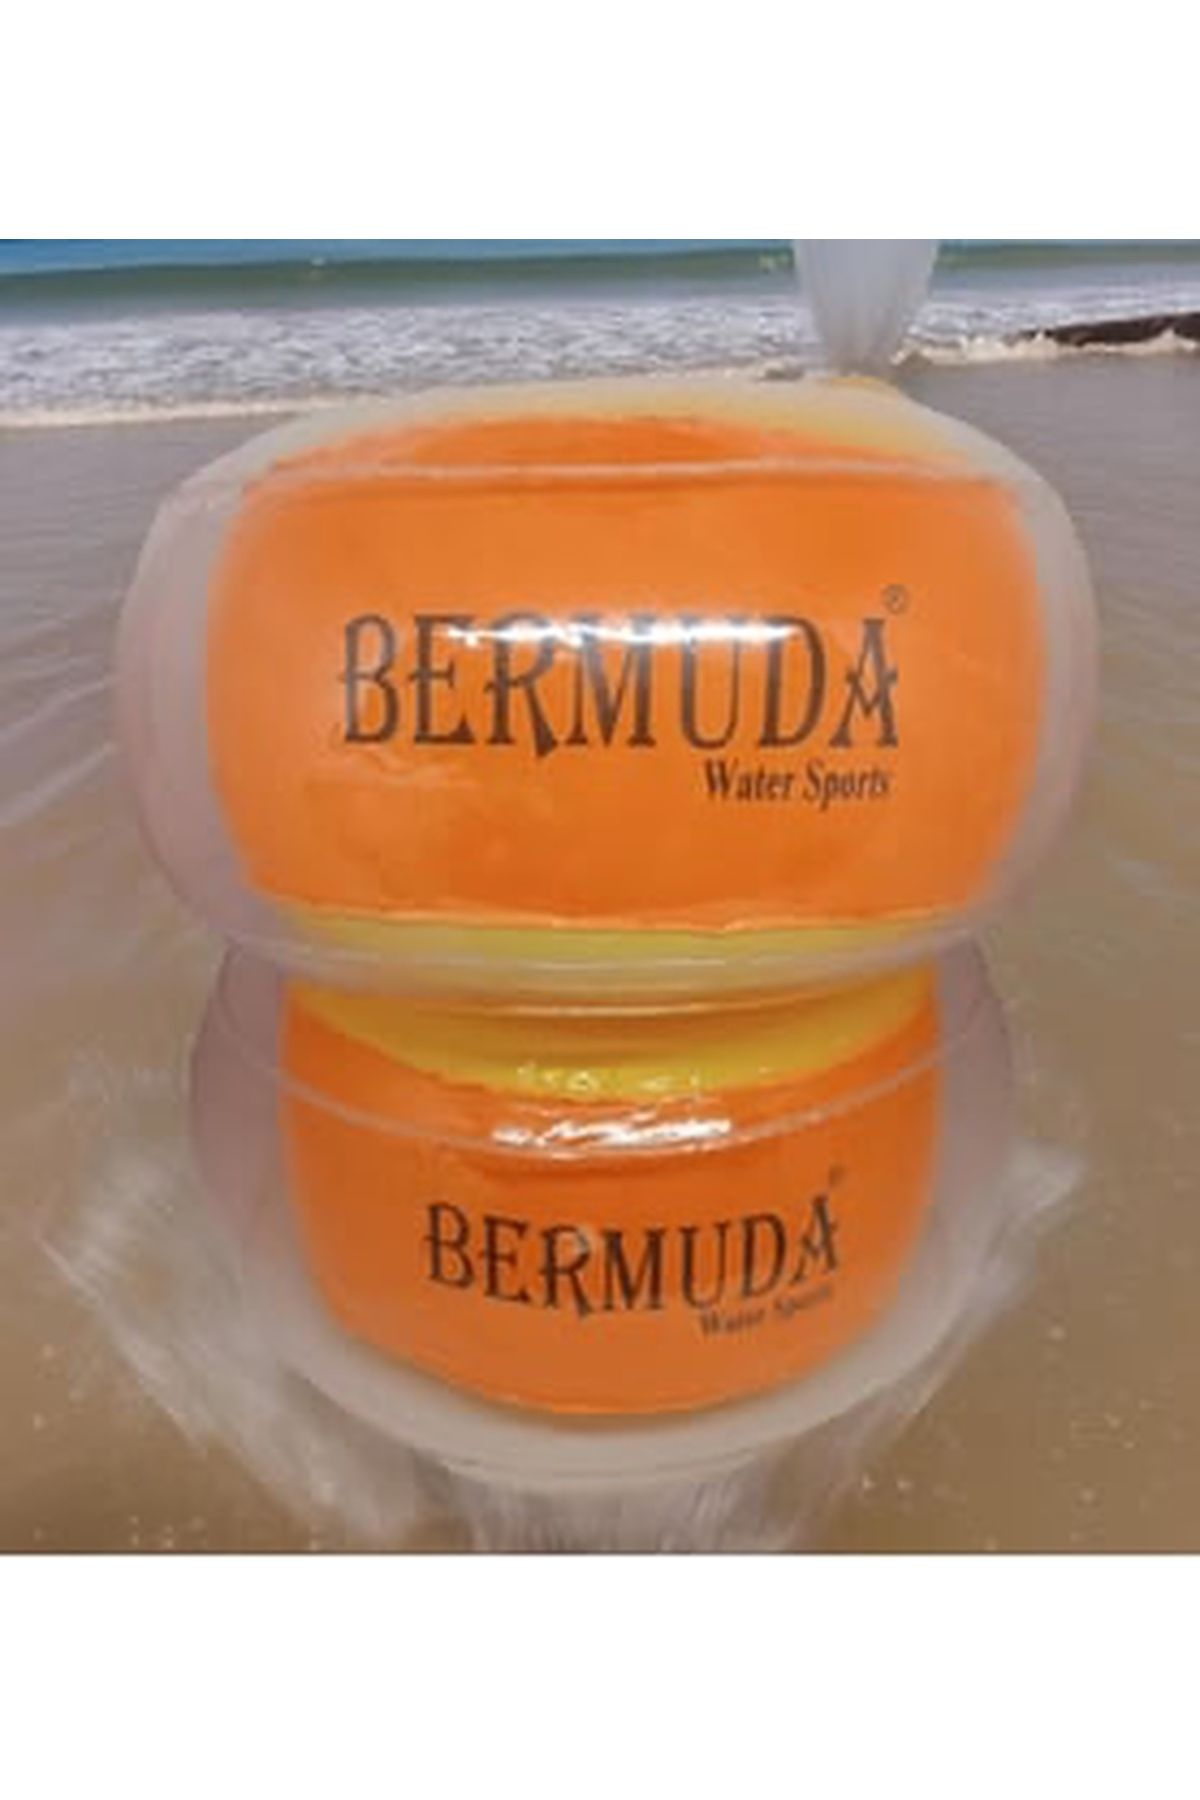 OYUNCAK STORE Bermuda Armband Başlangıç Seviye Akıllı Kolluk Çocuk Deniz Havuz Yüzme Kolluğu